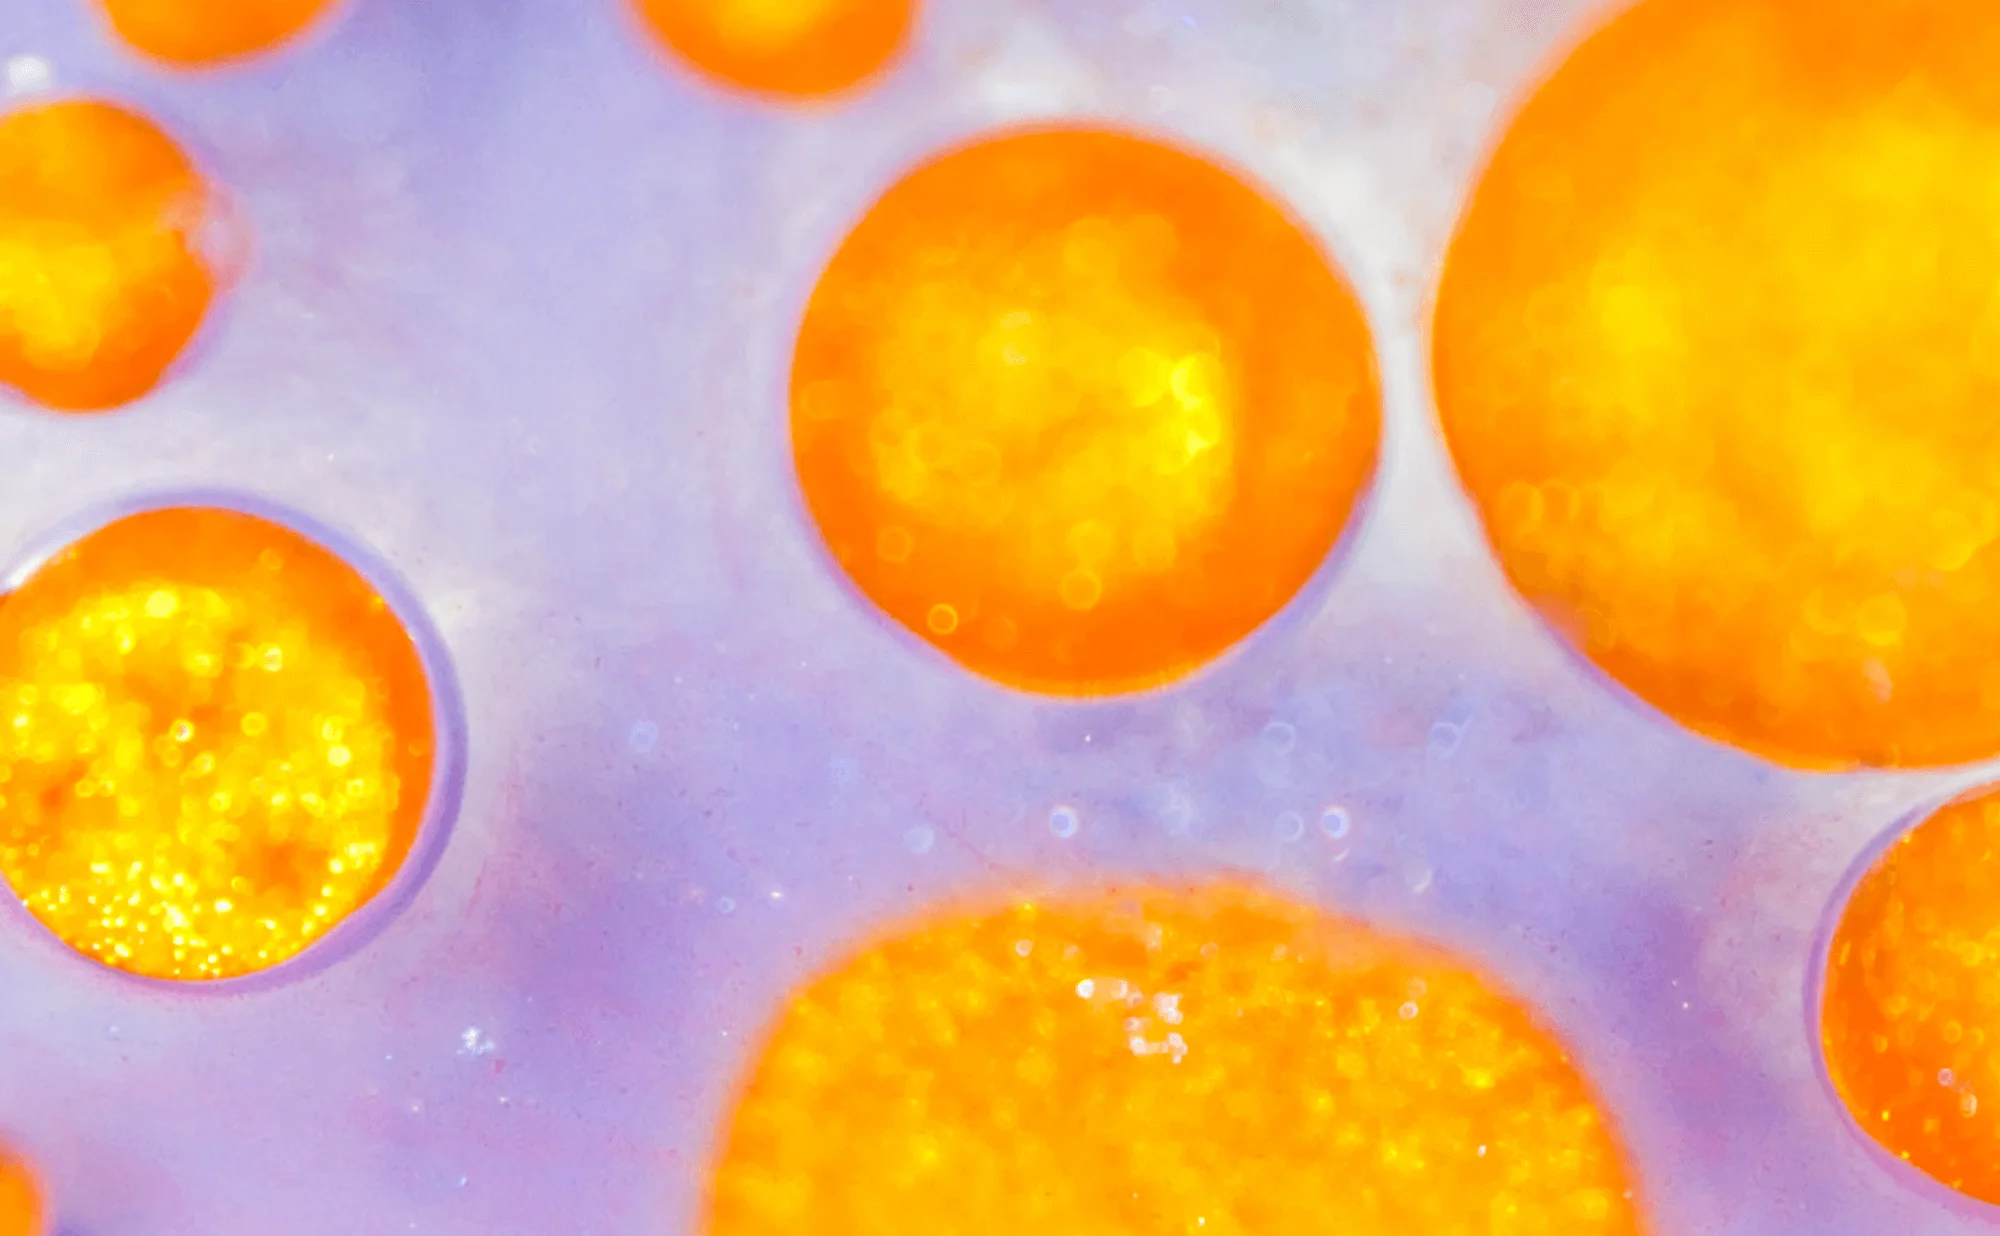 Gouttelettes de penture dorée miscibles dans un océan de pigment violet. Photographie, Microfluidic Poetry | Julien Ridouard, en collaboration avec Elveflow